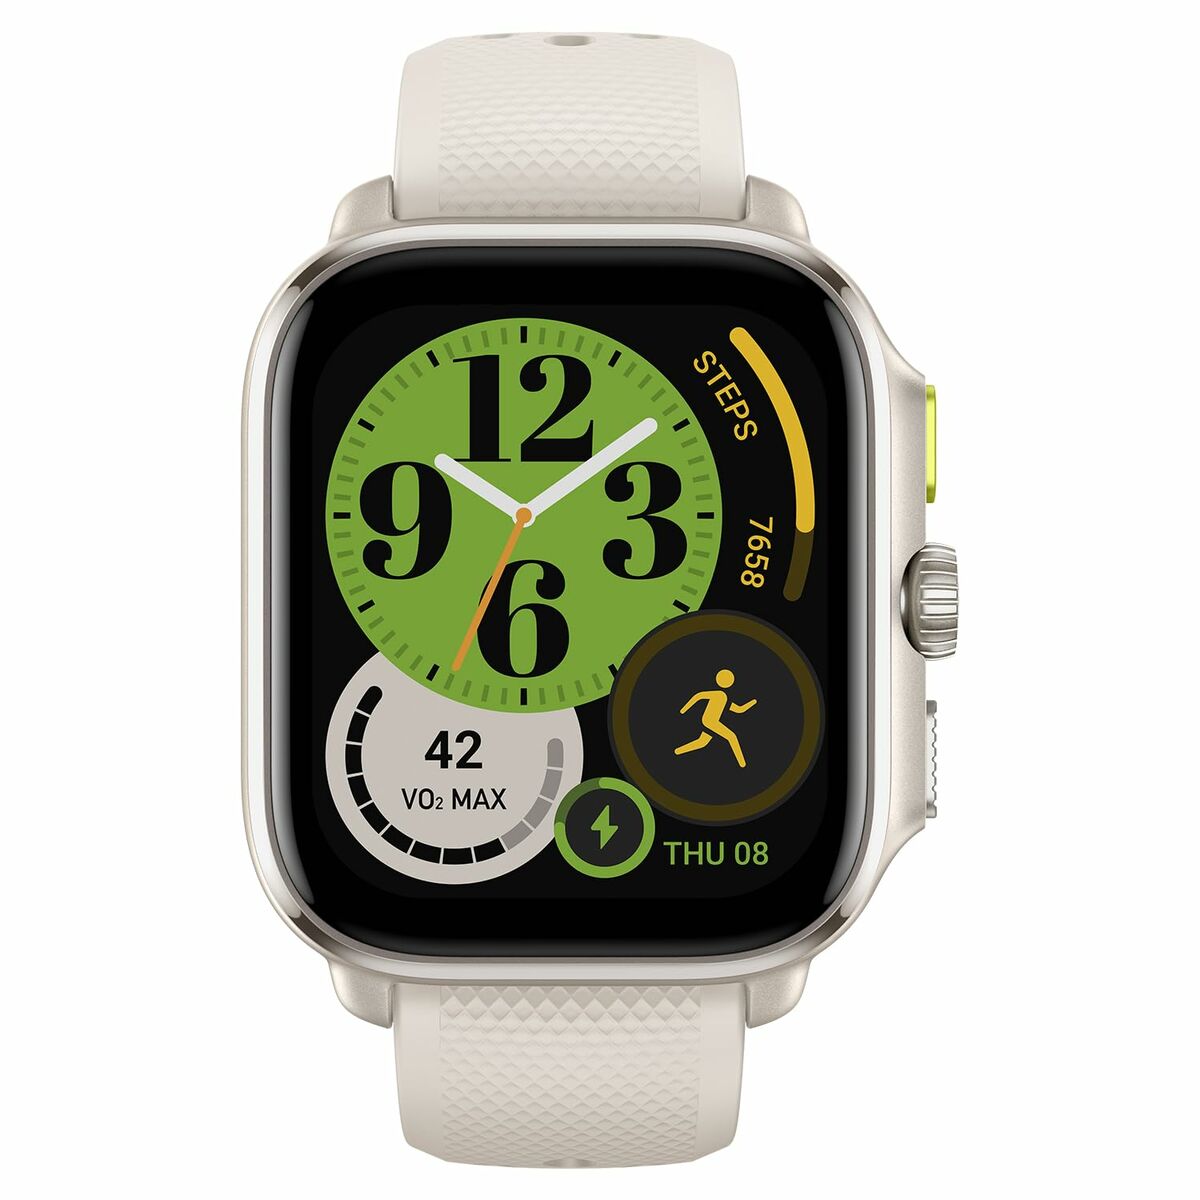 Kaufe Smartwatch Amazfit Cheetah Square Weiß 1,75" bei AWK Flagship um € 204.00